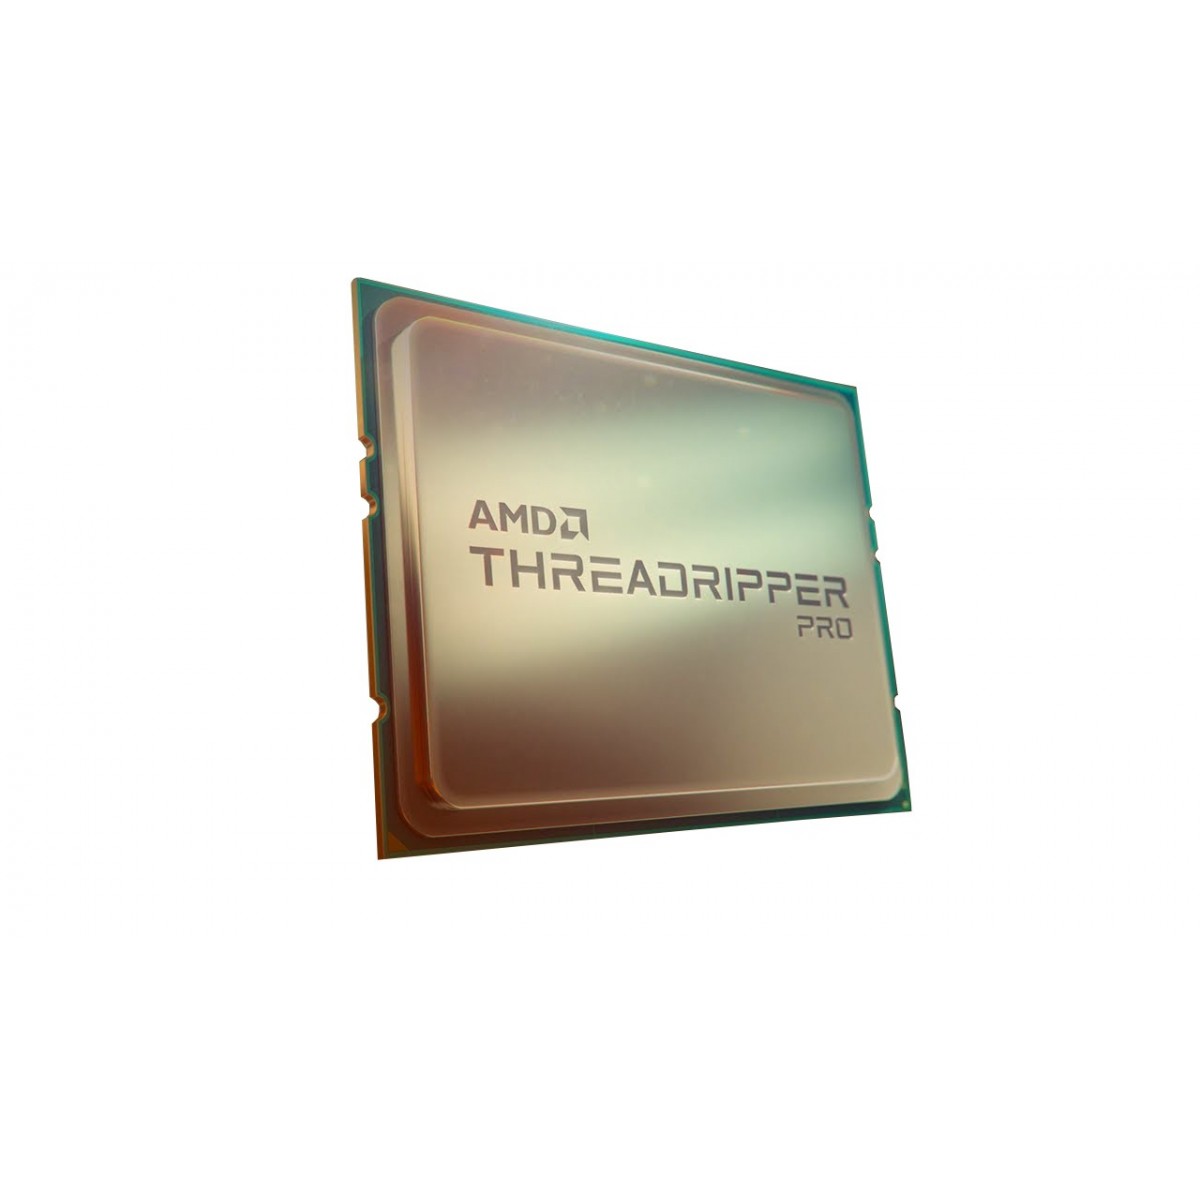 AMD Ryzen Threadripper PRO 3975WX - AMD Ryzen Threadripper PRO - Server-workstation - 7 nm - AMD - 3.5 GHz - 3975WX